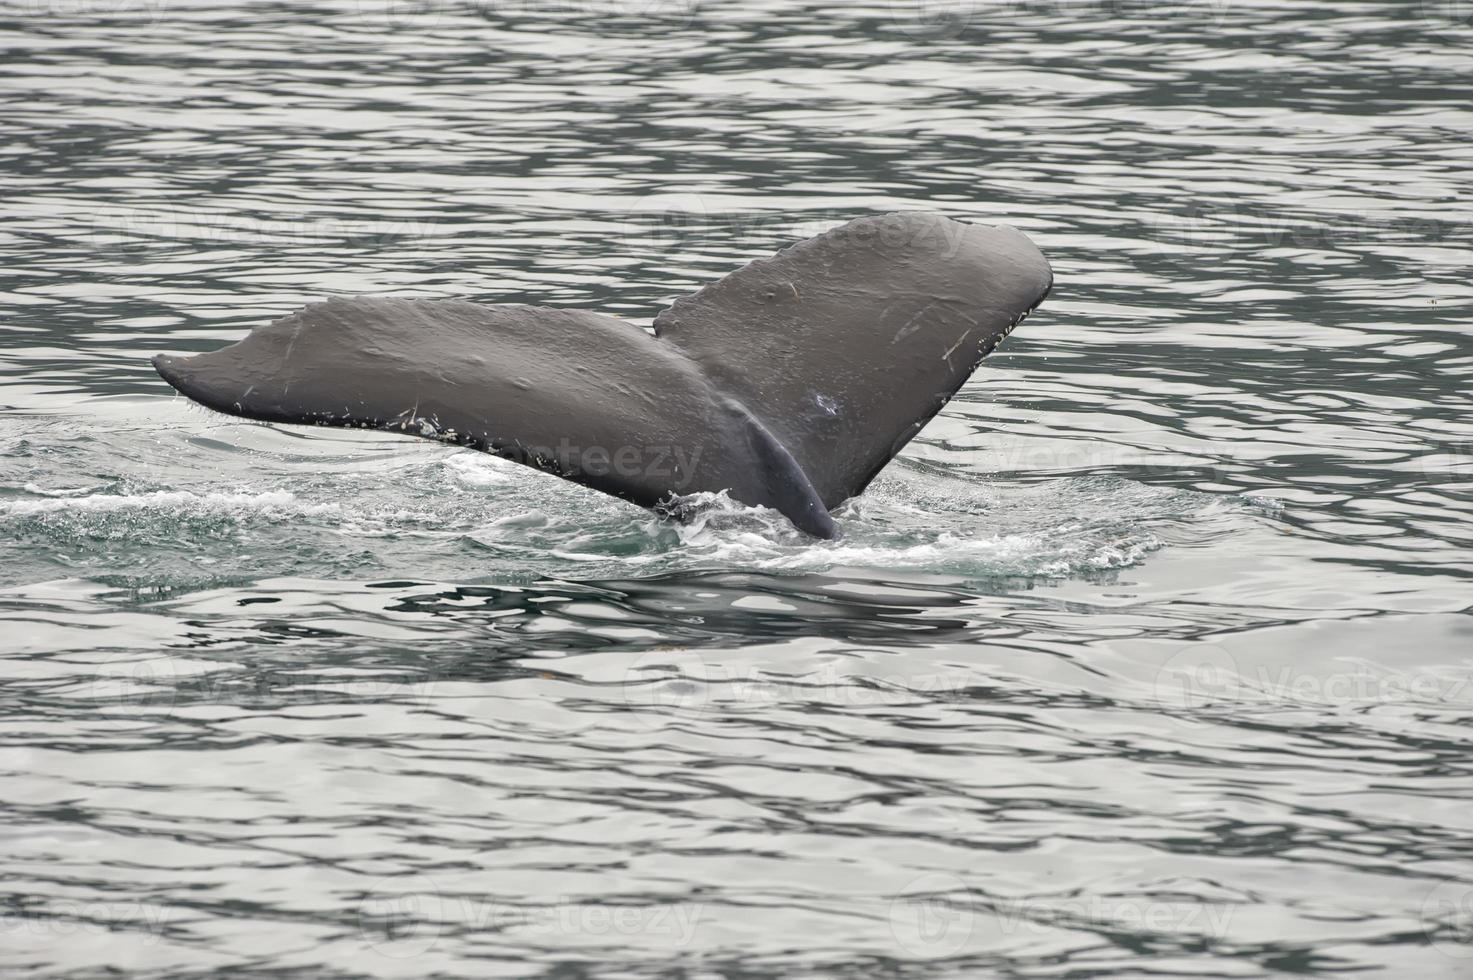 Queue de baleine à bosse en descendant dans la baie du glacier en Alaska photo